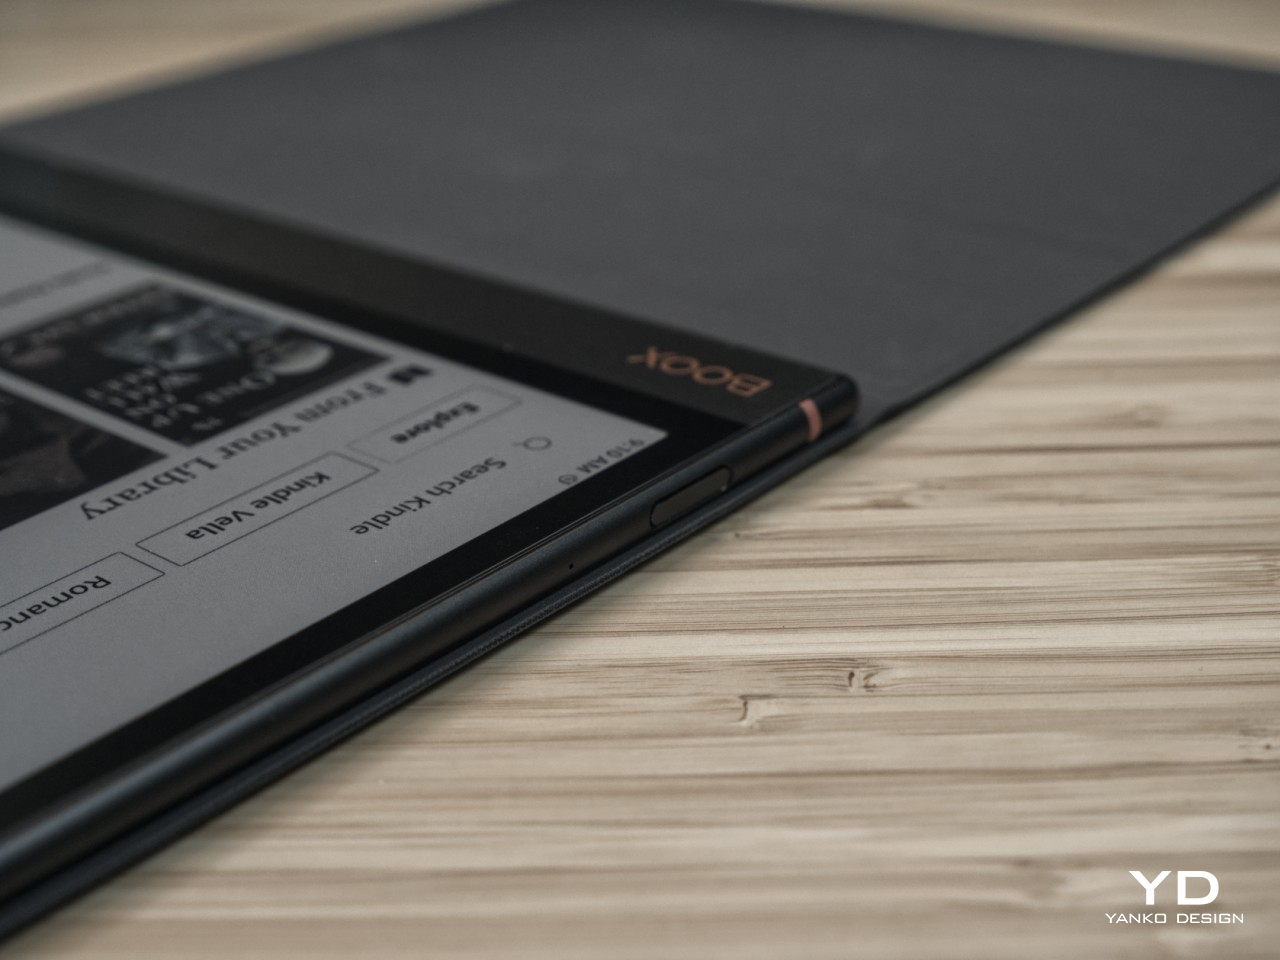 El Onyx BOOX Note Air3 C debuta en Europa y EE.UU. como nuevo E-reader de  gran tamaño con pantalla en color -  News